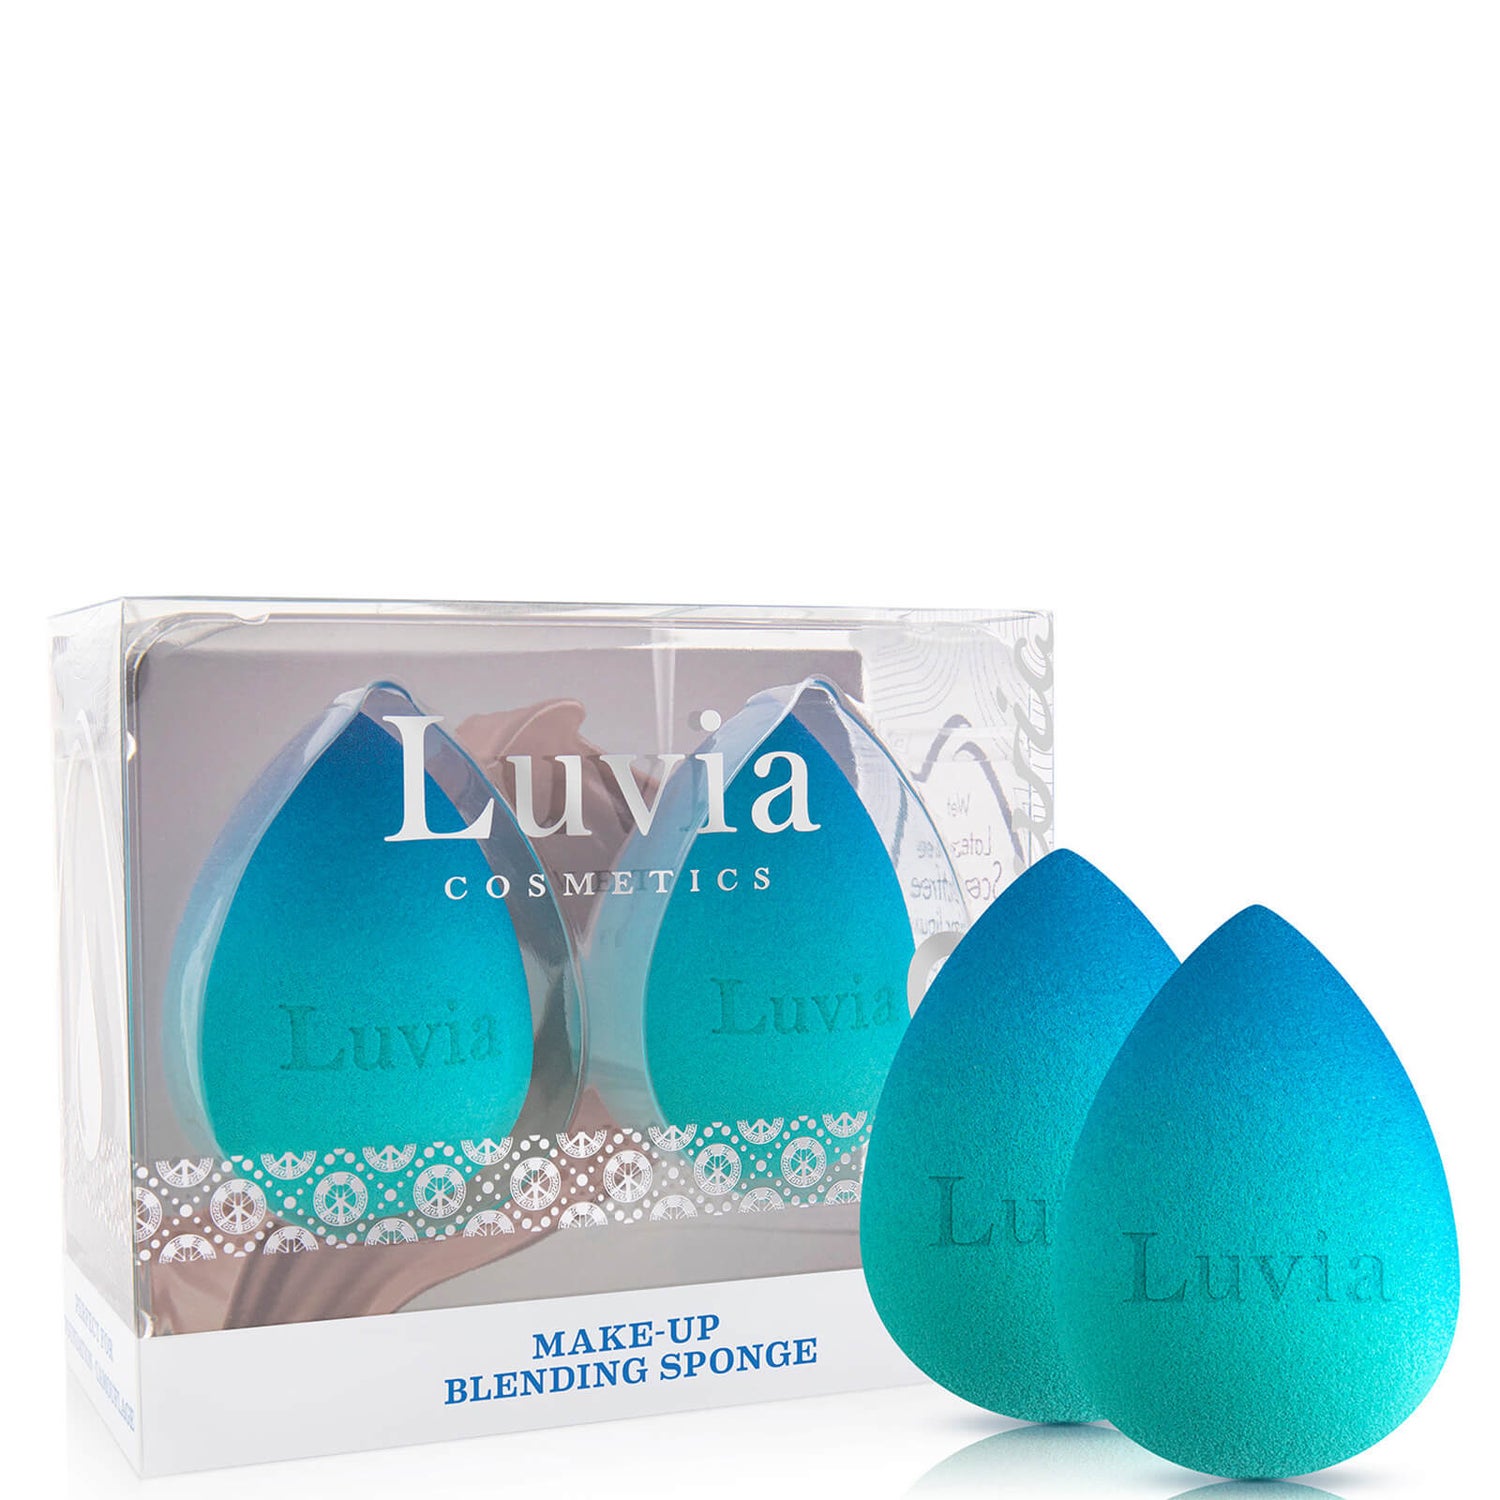 Luvia Make-up Blending Sponge Set - Blue Lagoon